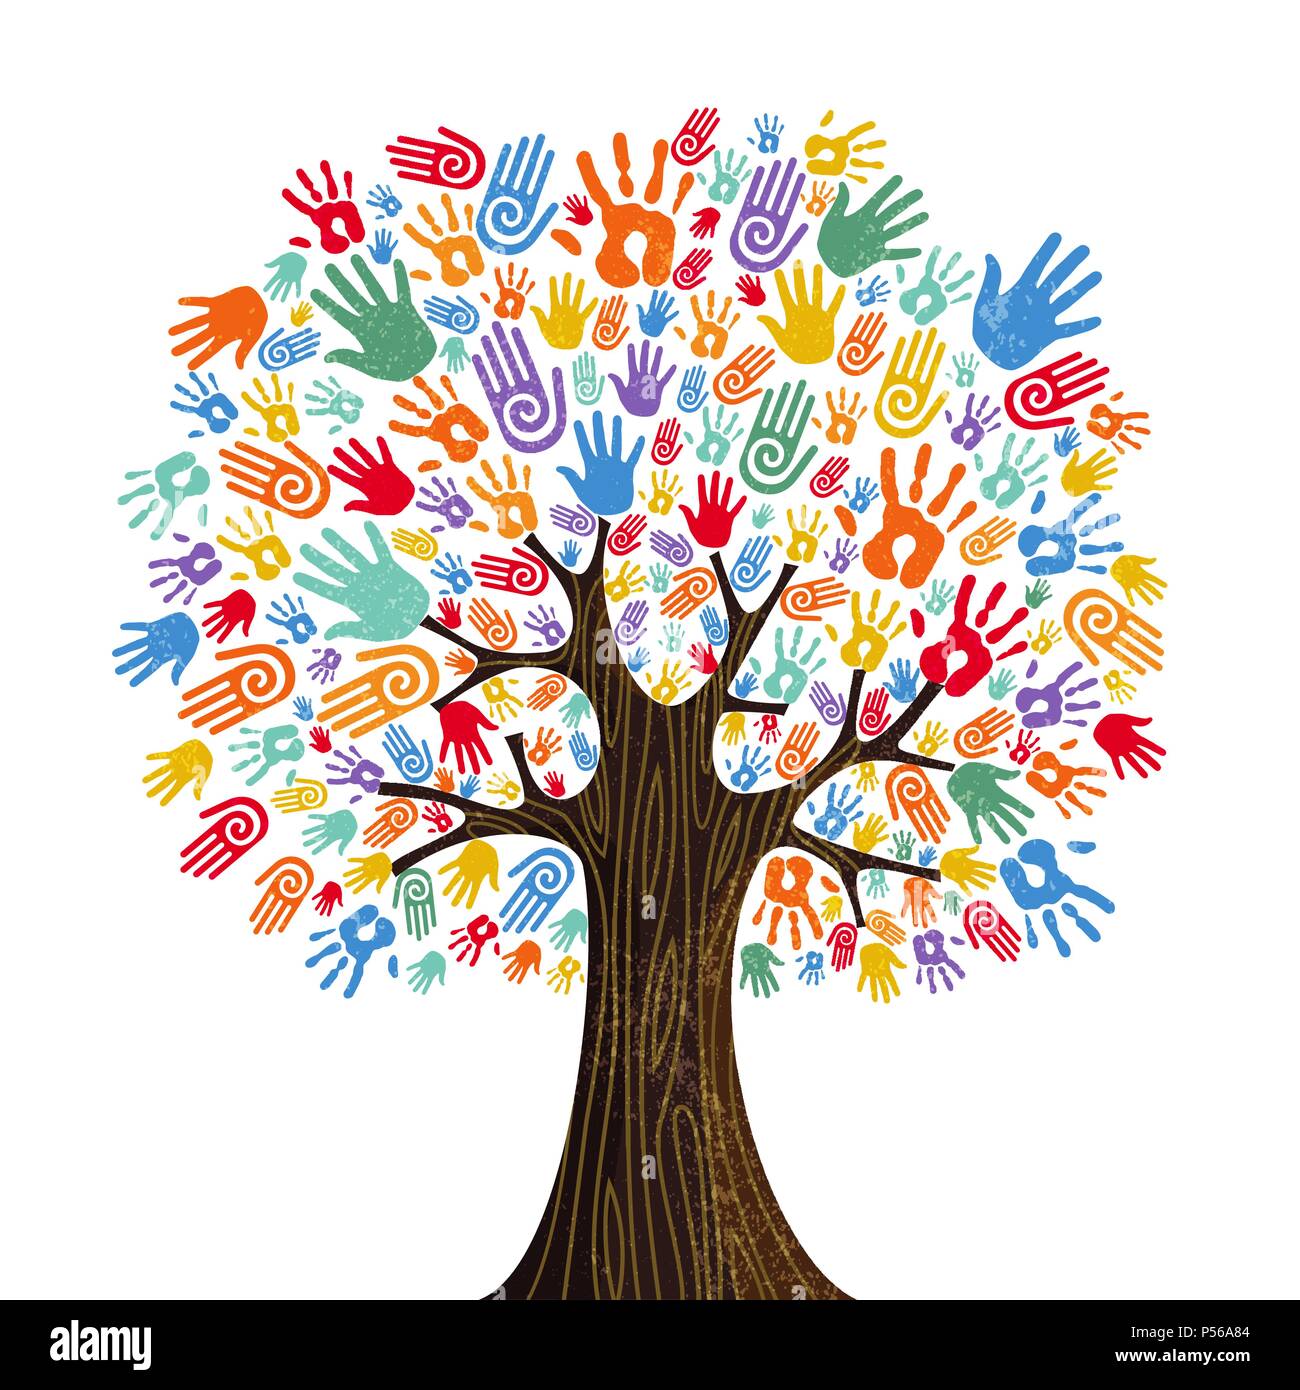 Arbre avec des couleurs les mains ensemble. L'équipe communautaire concept illustration pour la diversité de la culture, de la nature ou de soins d'équipe projet. Vecteur EPS10. Illustration de Vecteur